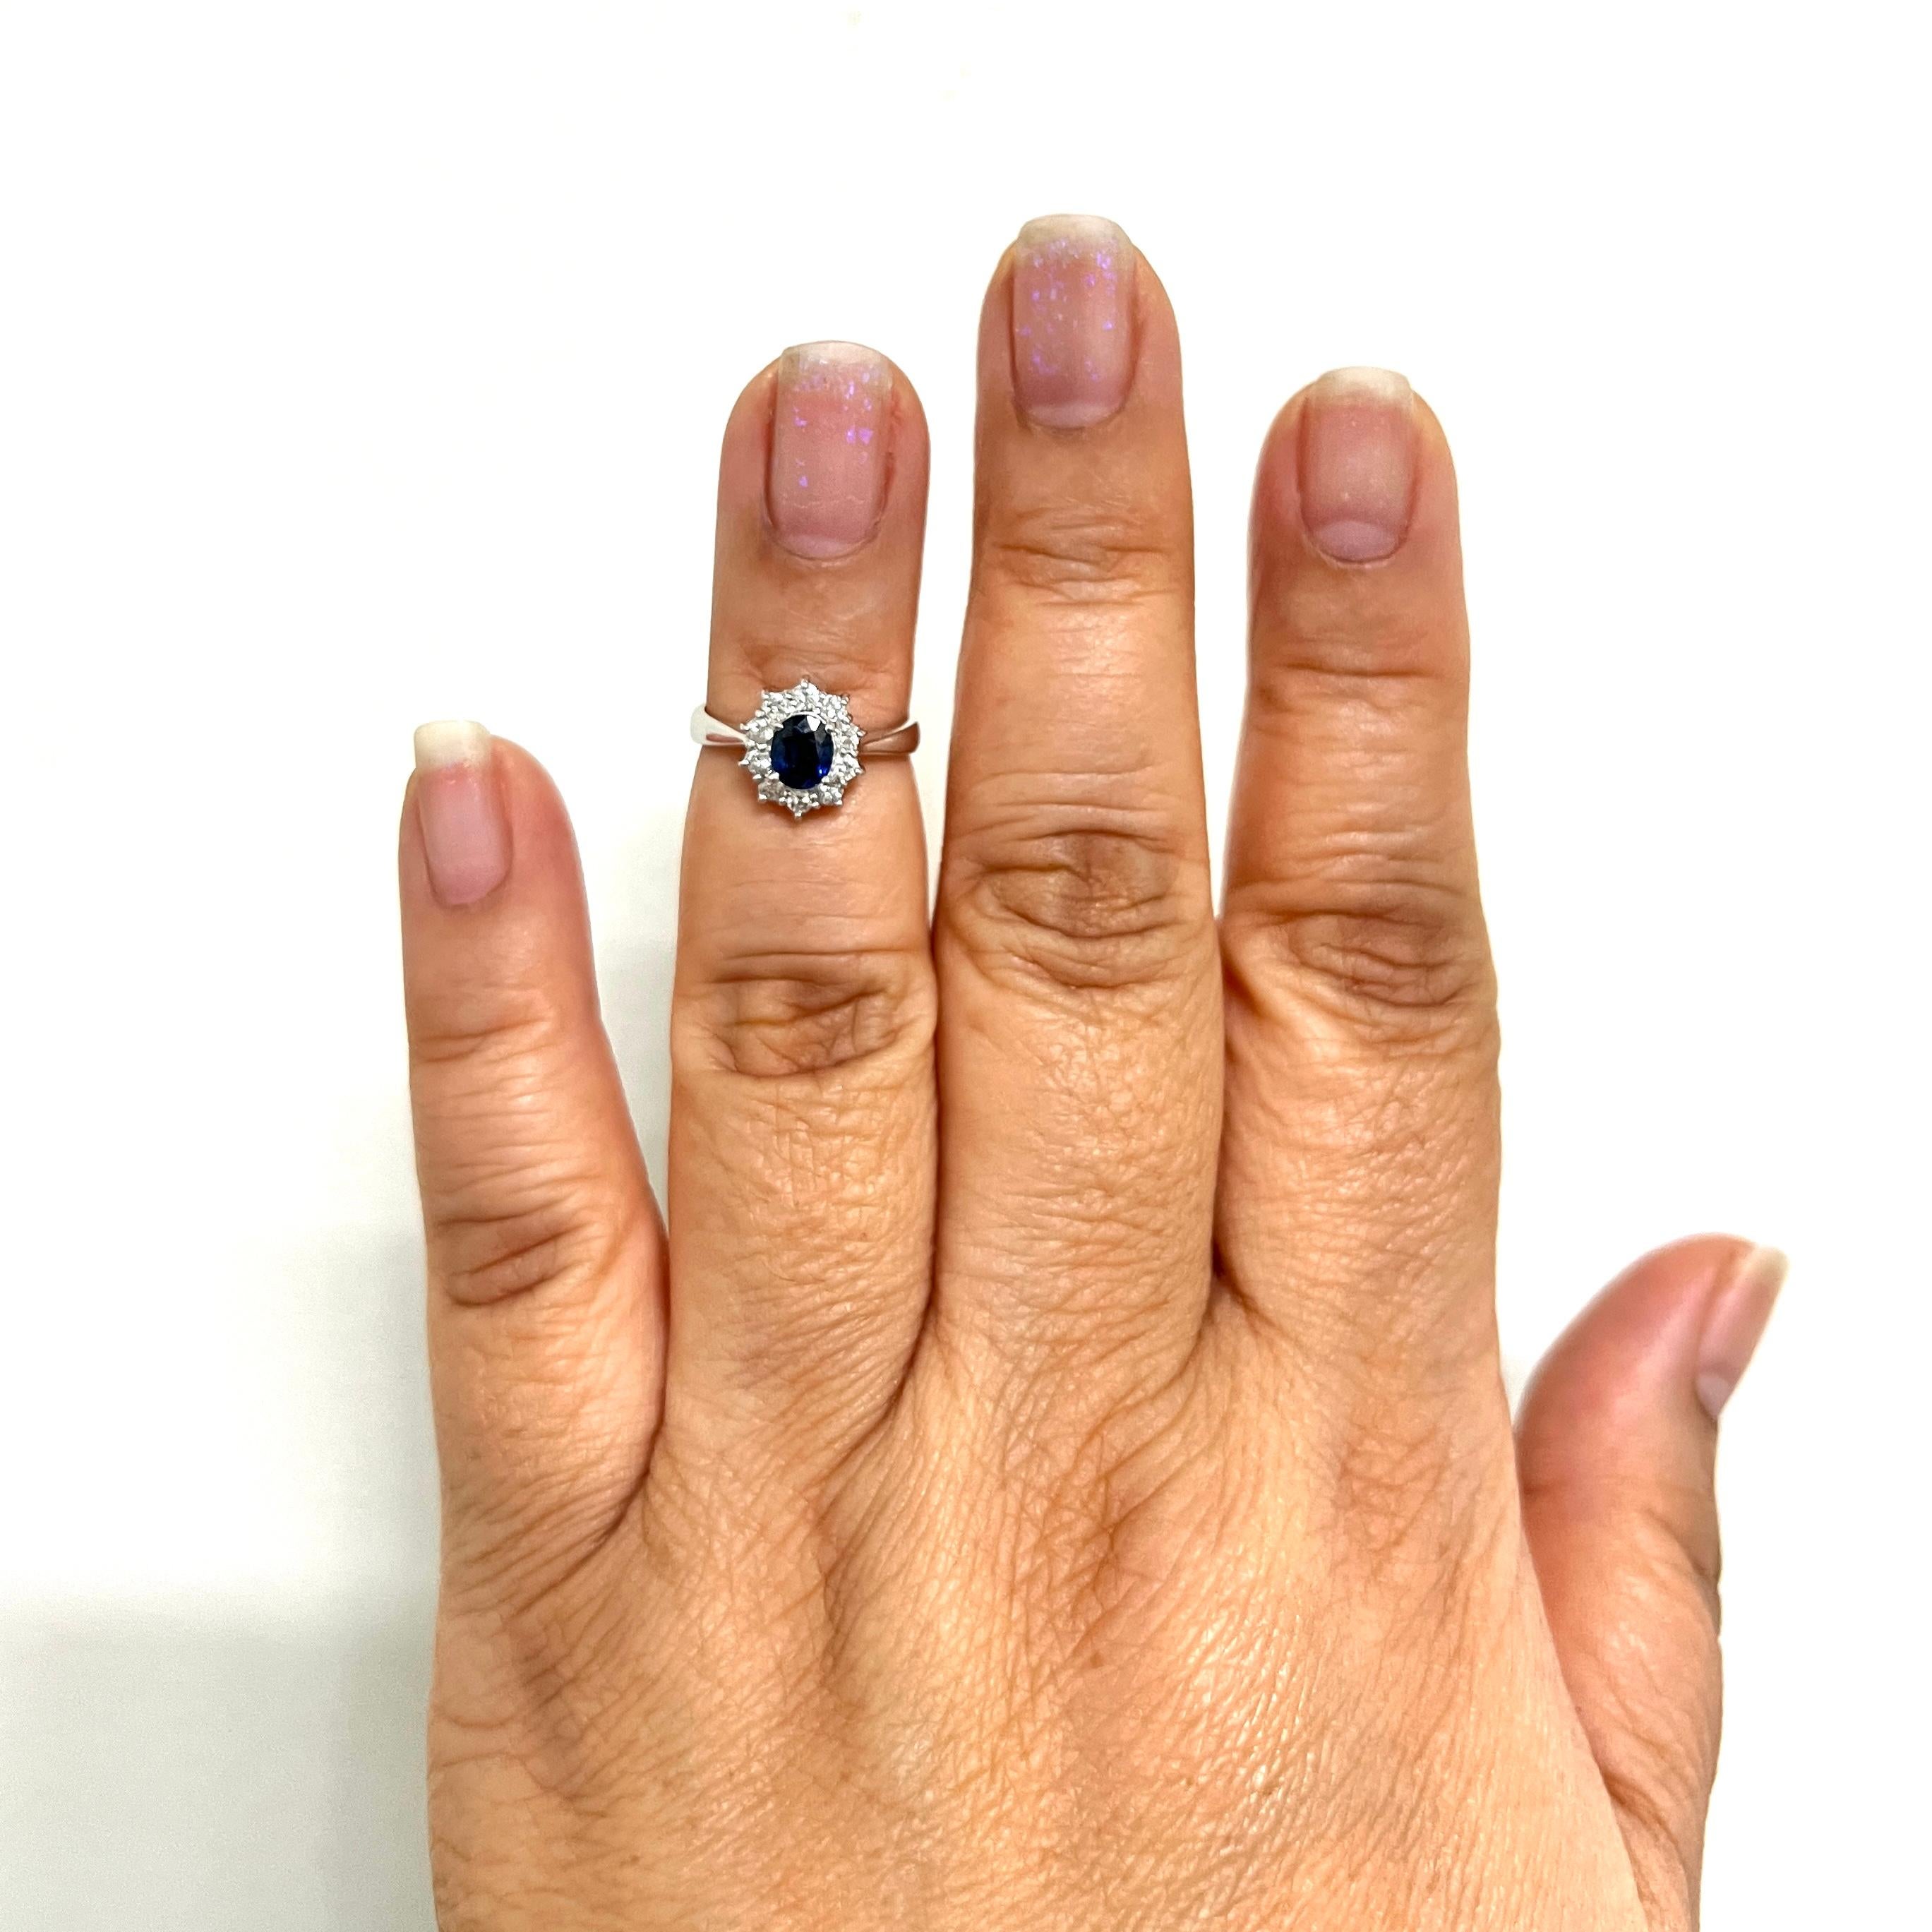 Wunderschönes 0,59 ct. blaues Saphir-Oval mit 0,27 ct. weißen, runden Diamanten.  Handgefertigt in Platin.  Ring Größe 4.